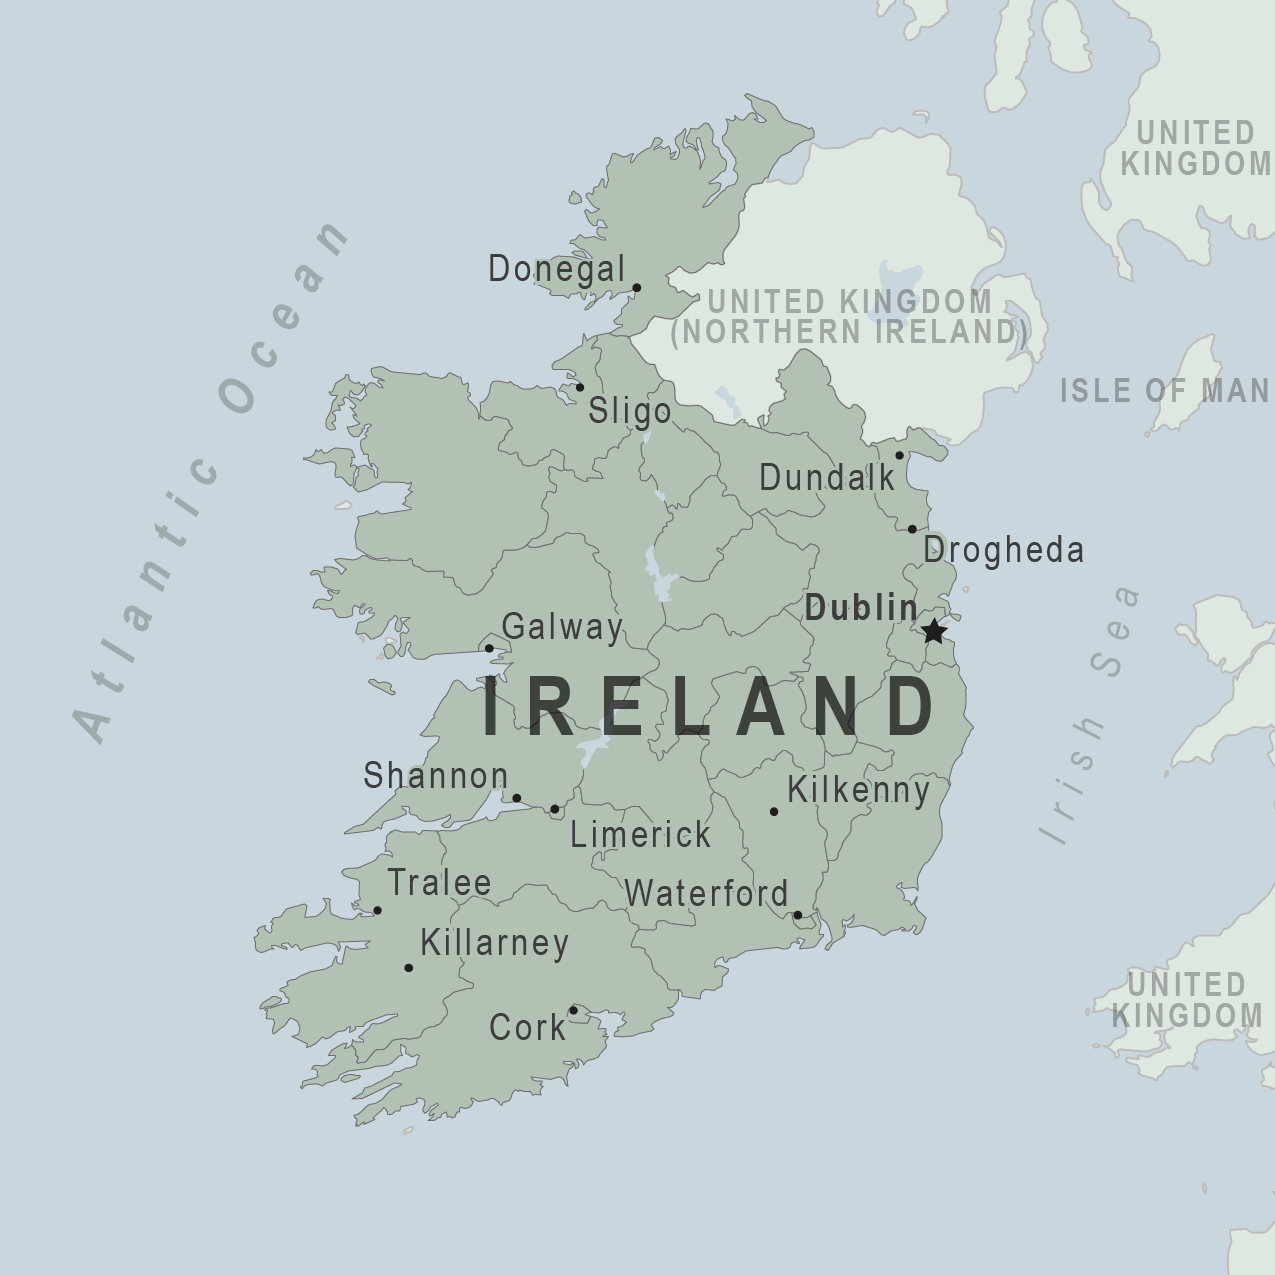 gov.uk travel to ireland